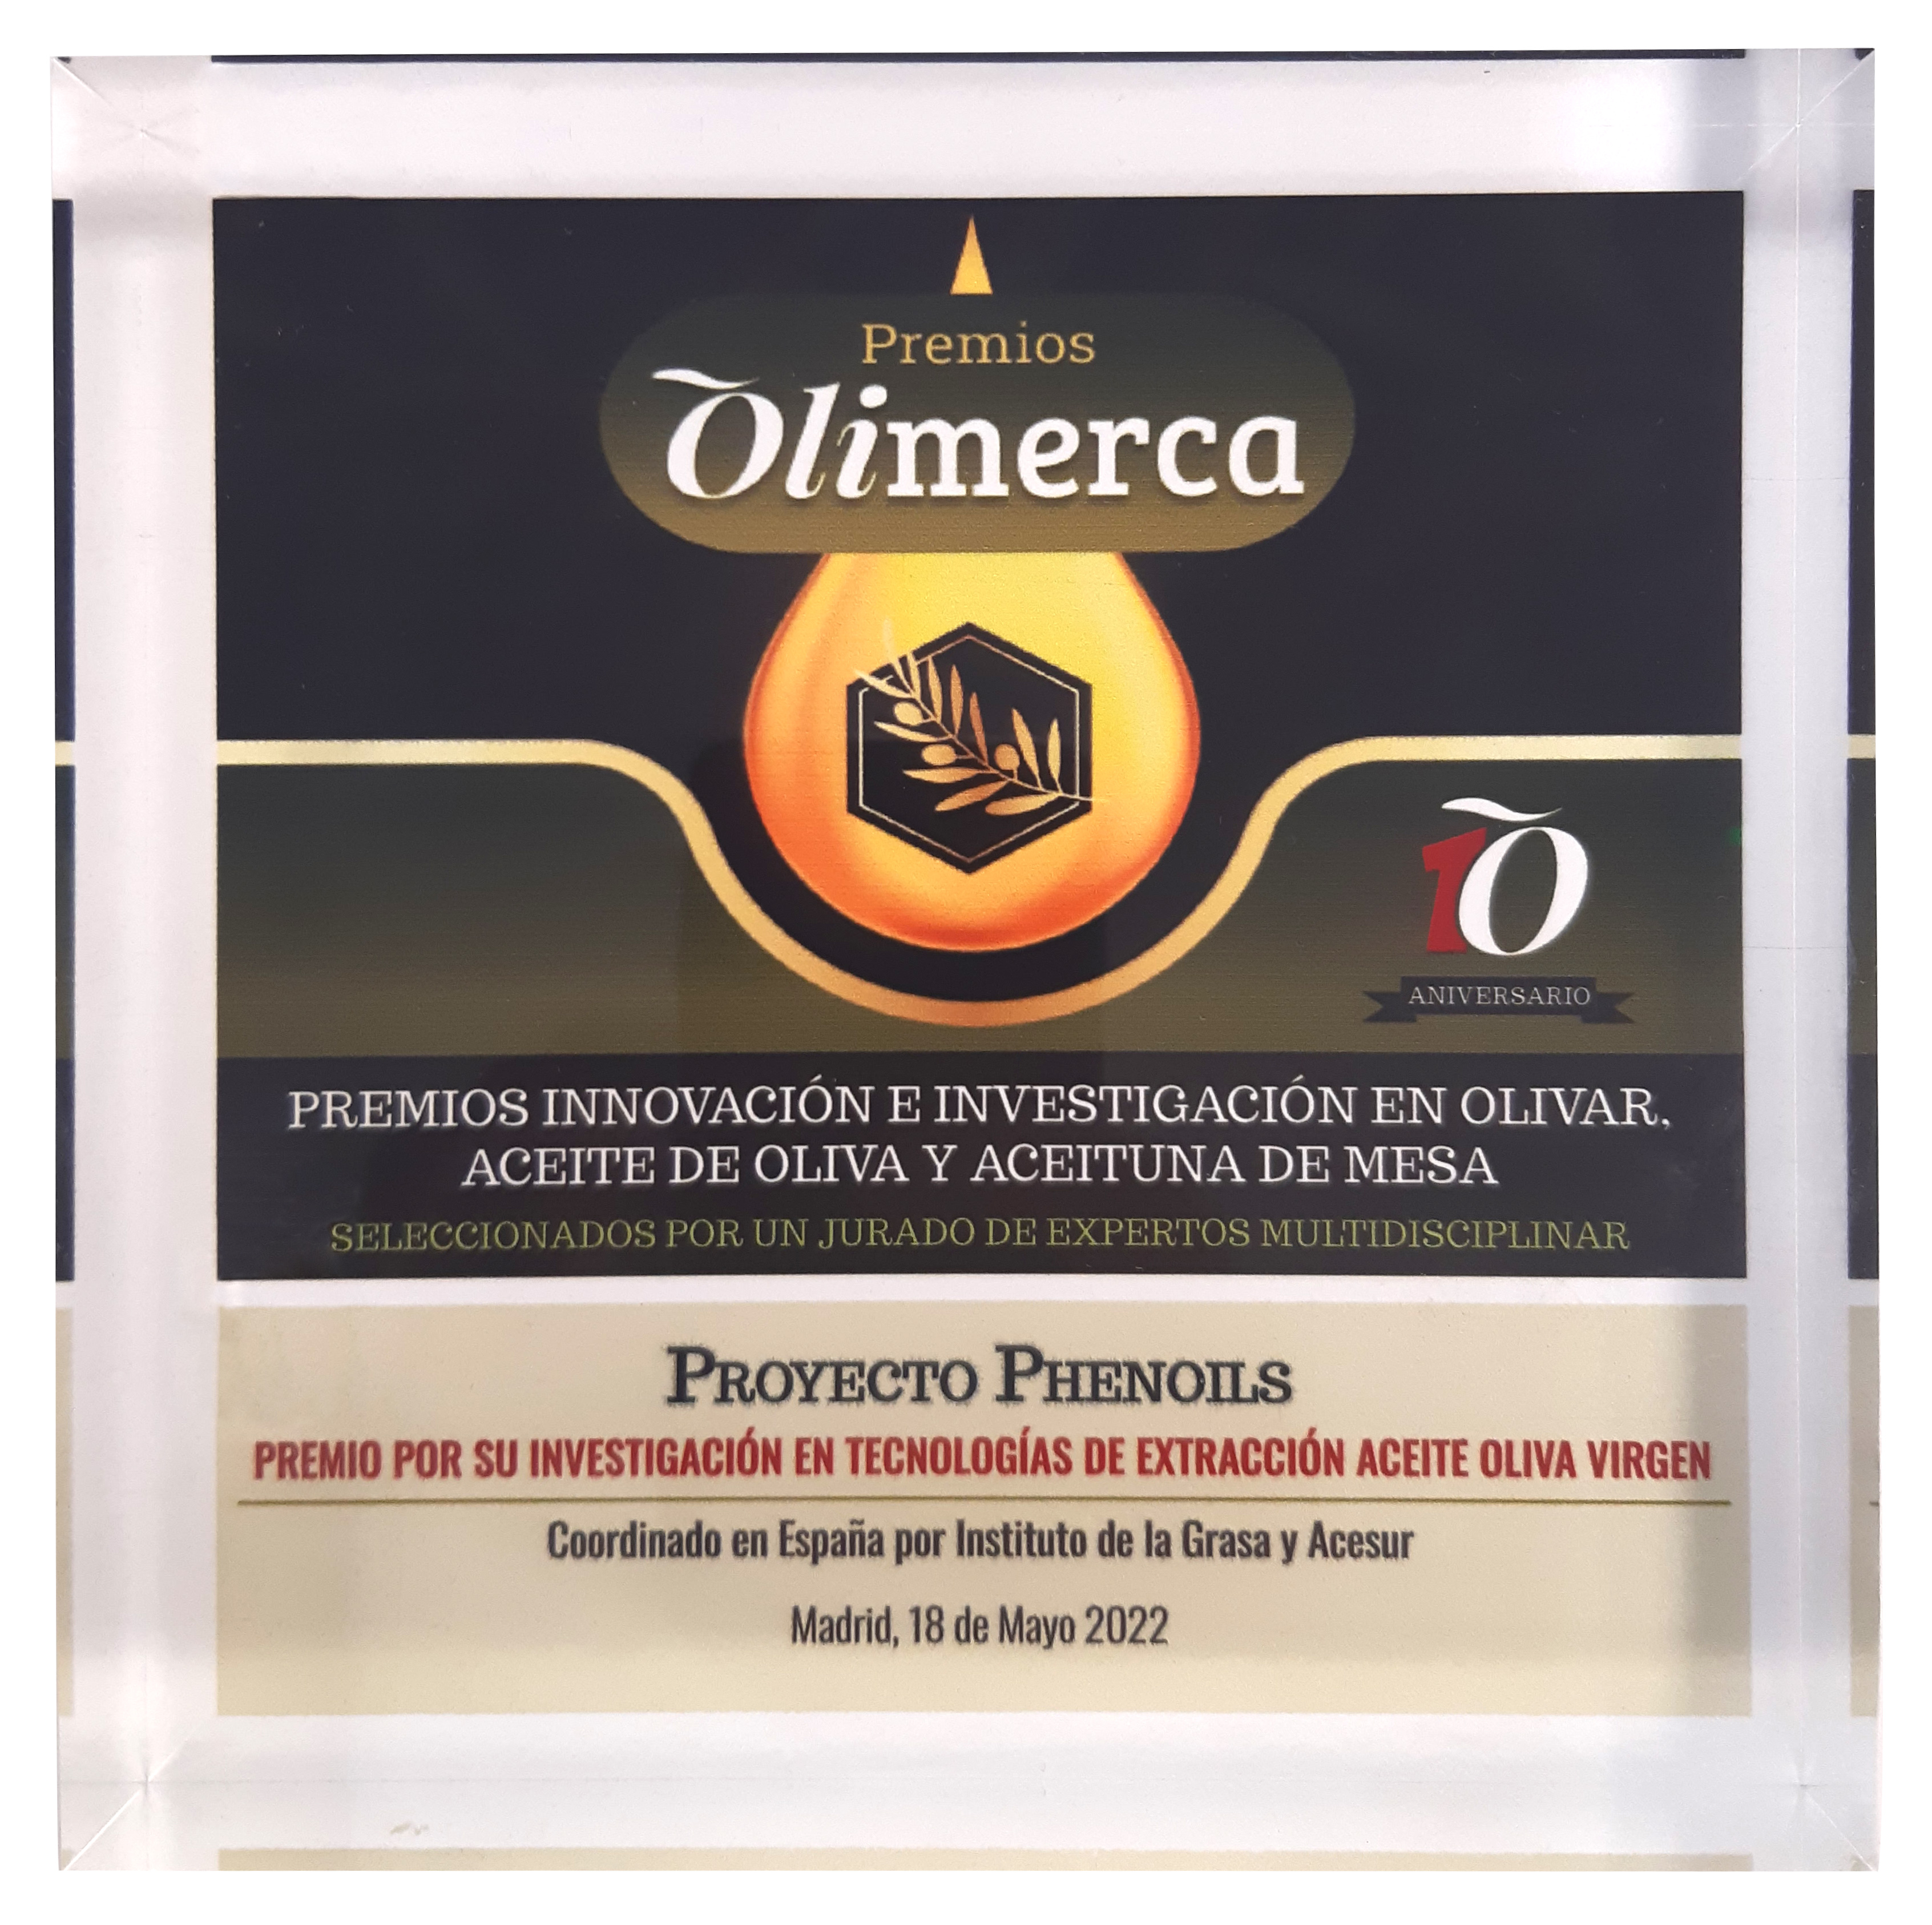 https://acesur.com/wp-content/uploads/2022/07/2022-Revista-Olimerca-Premio-ID.png